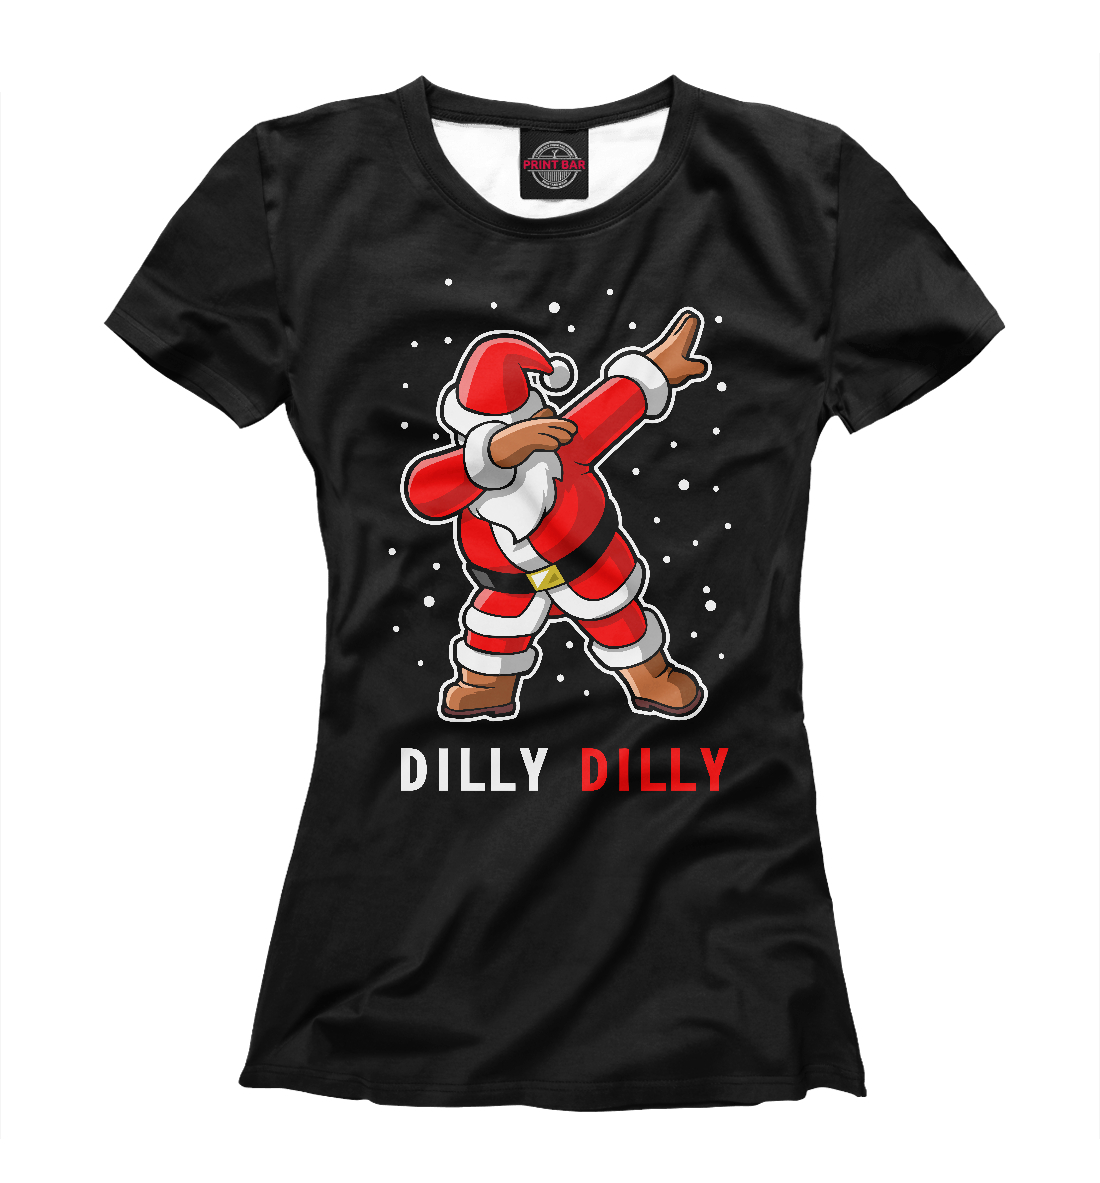 Футболка Dilly Dilly для девочек, артикул: DMZ-605043-fut-1mp